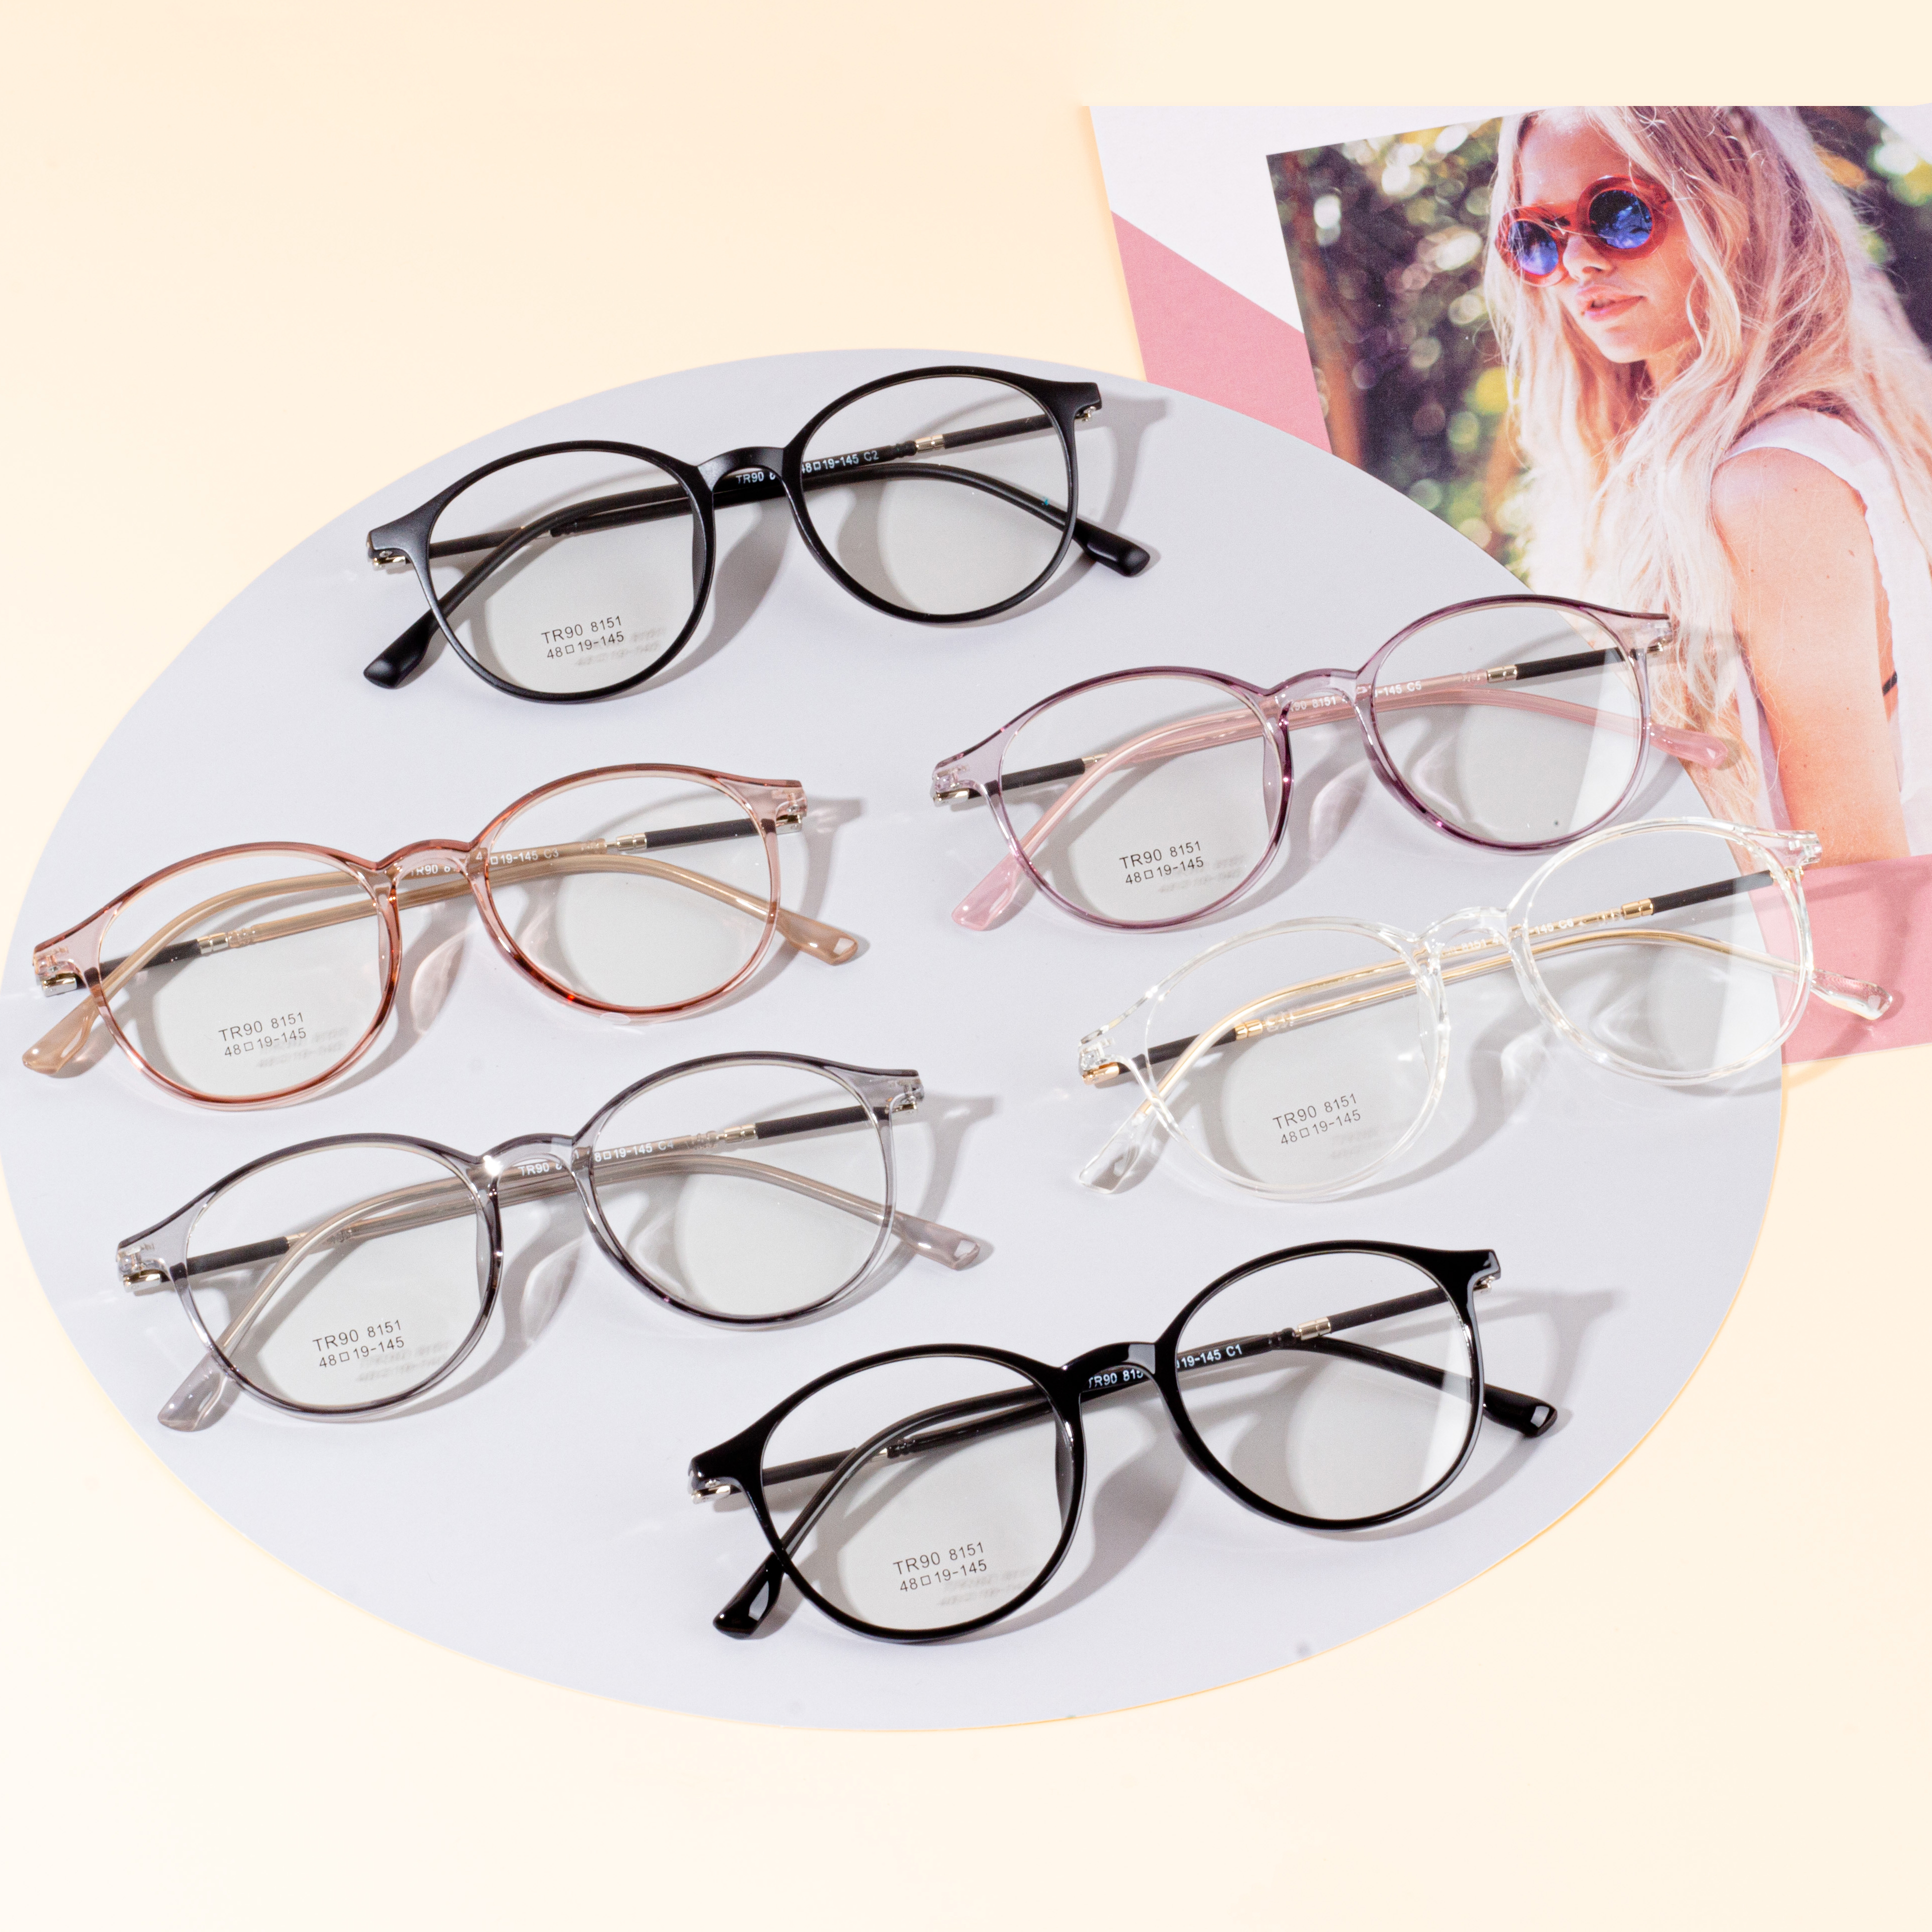 પુરૂષો અને મહિલા ડિઝાઇનર ફ્રેમ્સ - Eyeglasses.com 广告· https://www.eyeglasses.com/ (888) 896-3885 ટોચની વૈશ્વિક ચશ્મા બ્રાન્ડ્સમાંથી આજે અડધા છૂટક કિંમતે ડિઝાઇનર ફ્રેમ્સ ખરીદો.